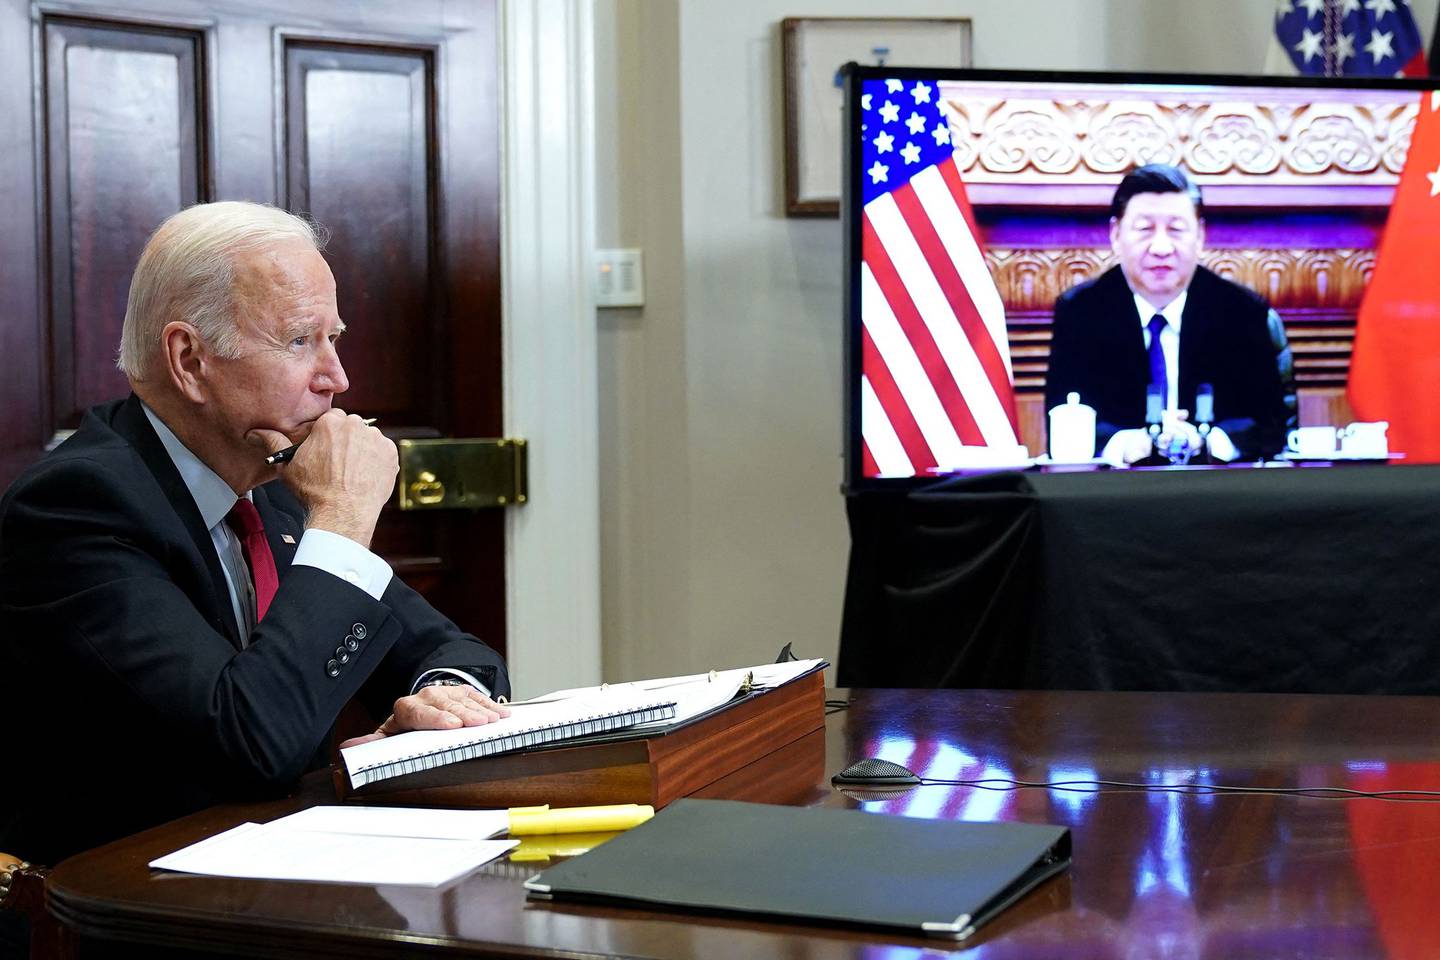 EE.UU. continuó amenazando con consecuencias no especificadas si China brinda apoyo a Rusia, y Pekín insistió en que estaba apoyando las conversaciones de paz mientras culpaba a EE.UU. por desencadenar el conflicto. Foto: Mandel Ngan/AFP/Getty Images